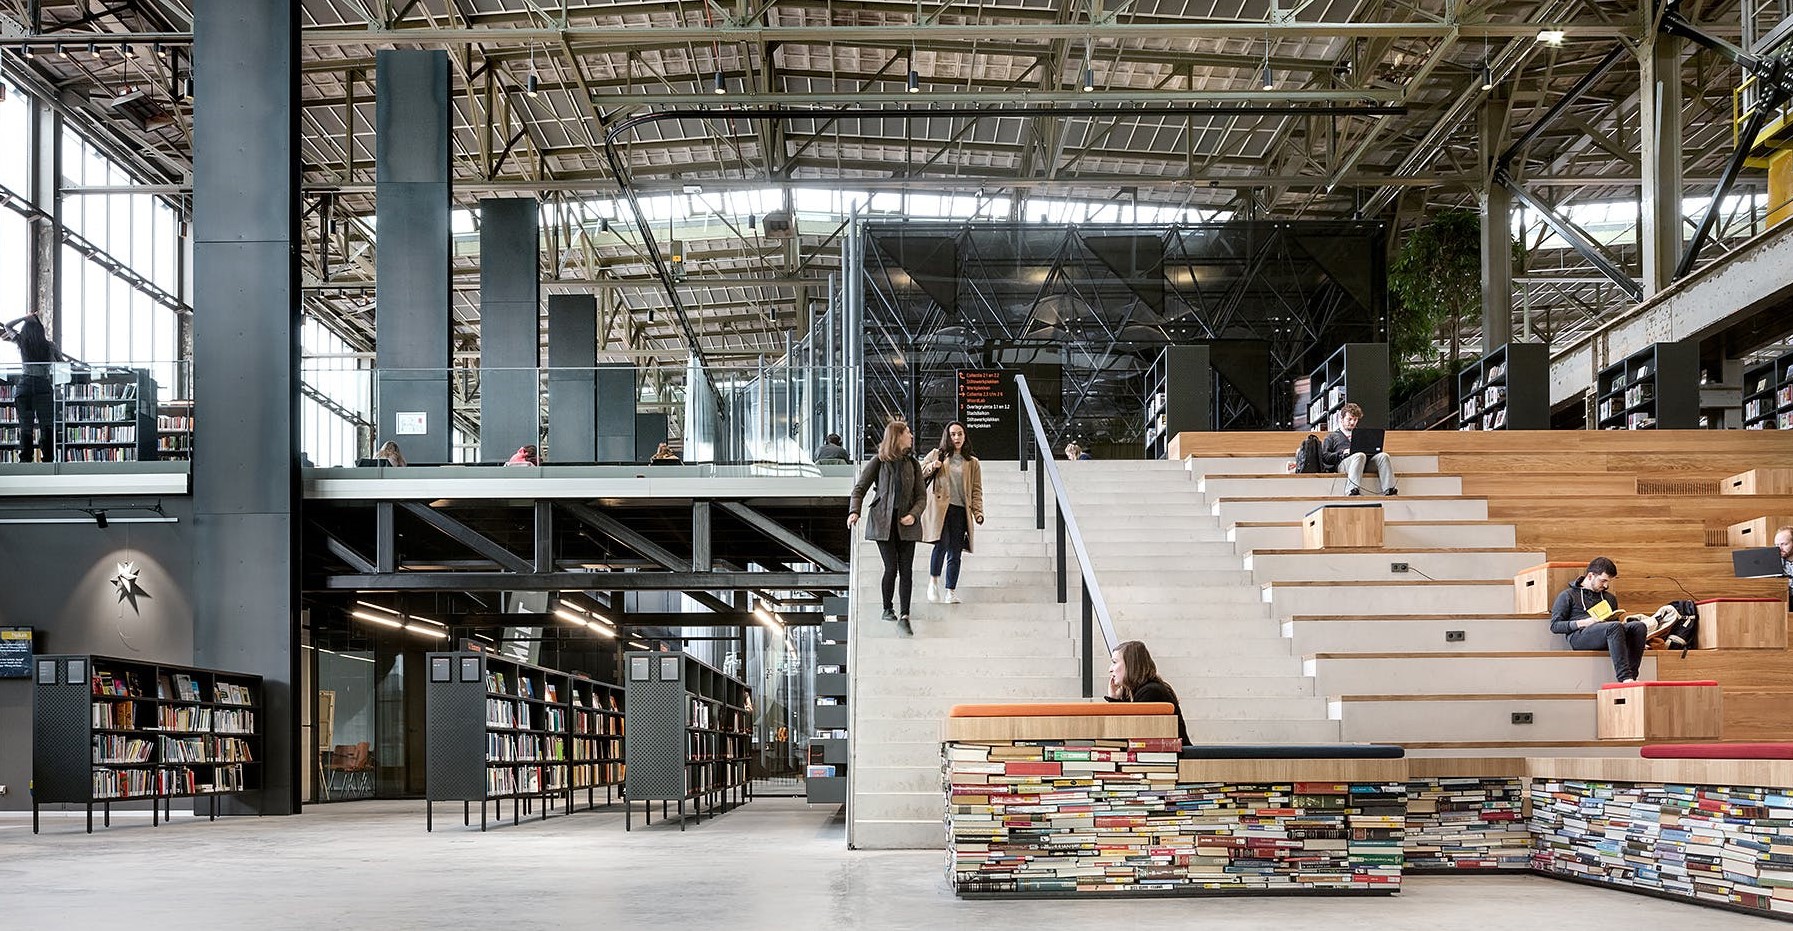 За разлика от София, Тилбург преустрои ЖП завода си в библиотека